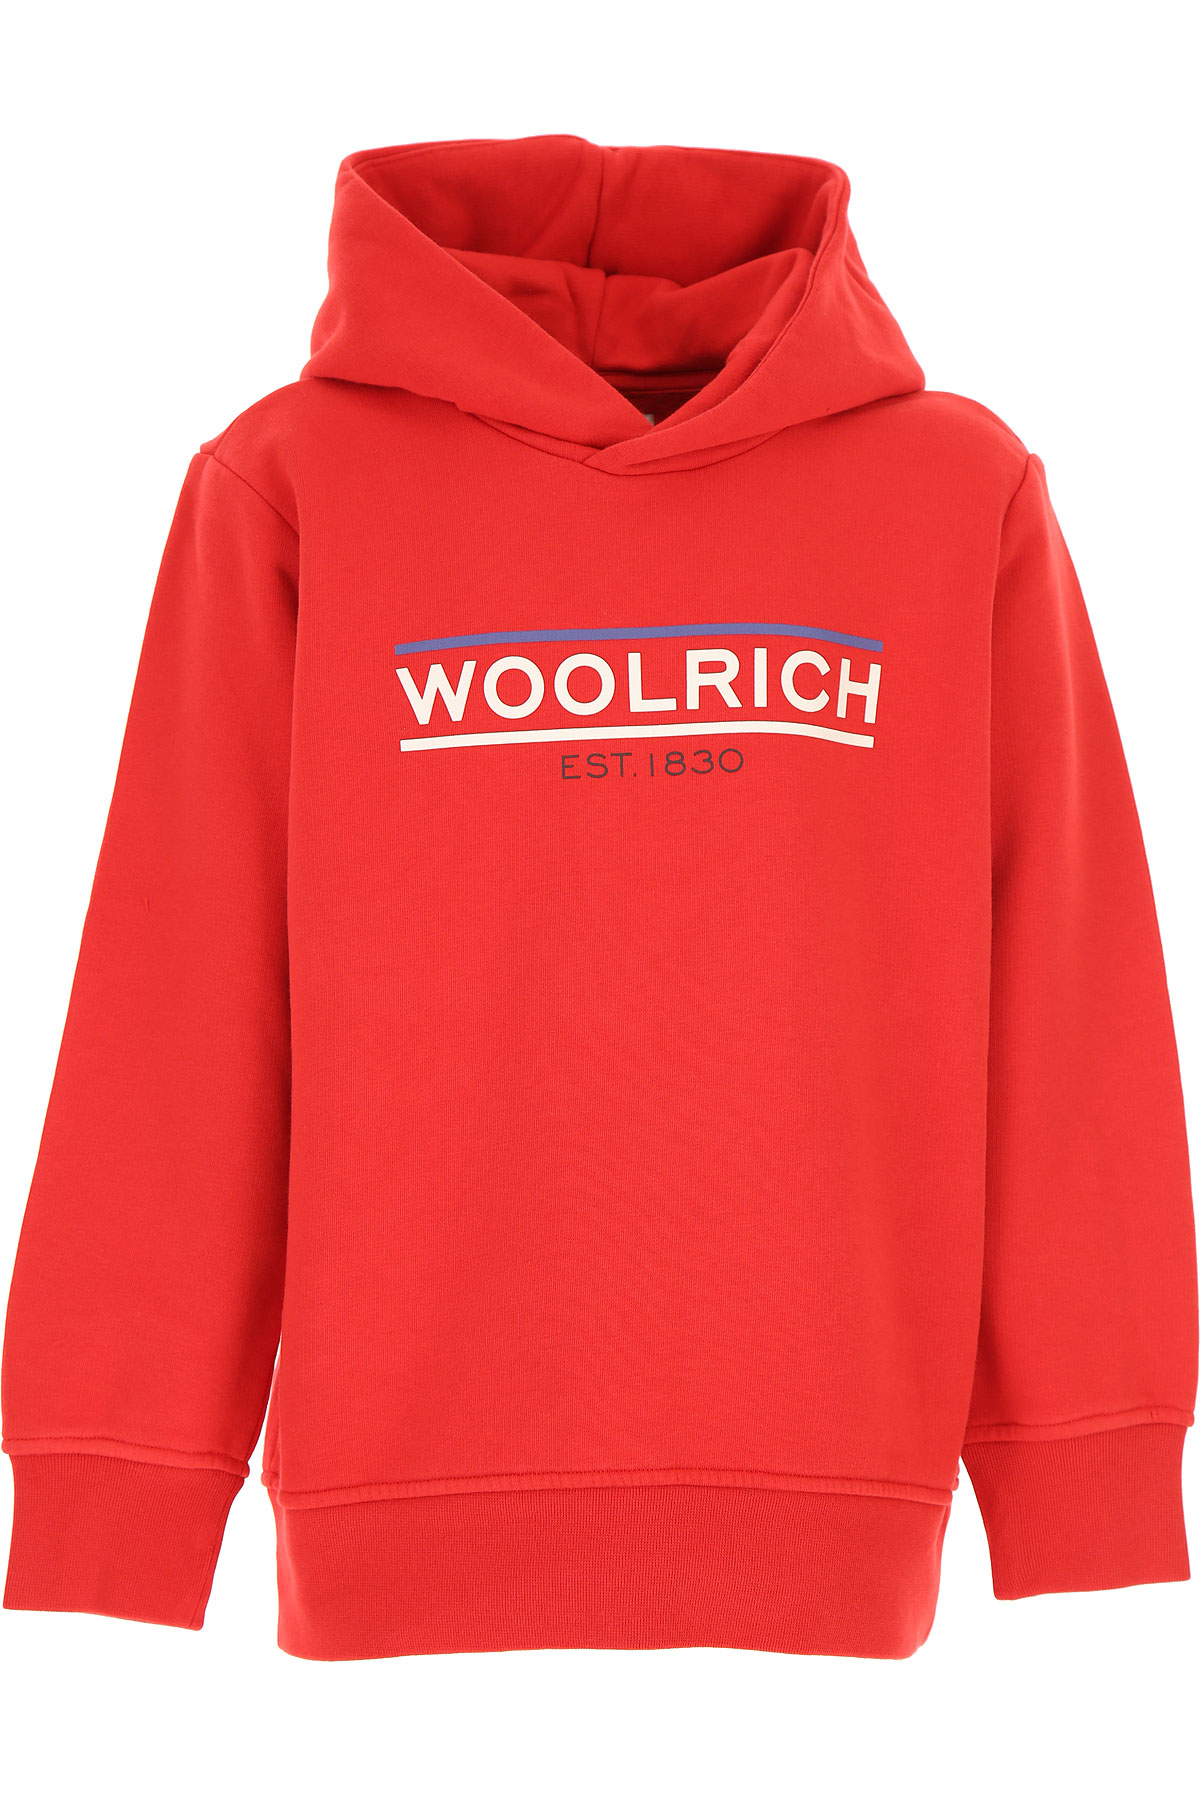 Woolrich Kinder Sweatshirt & Kapuzenpullover für Jungen Günstig im Sale, Rot, Baumwolle, 2017, 10Y 12Y 14Y 16Y 8Y